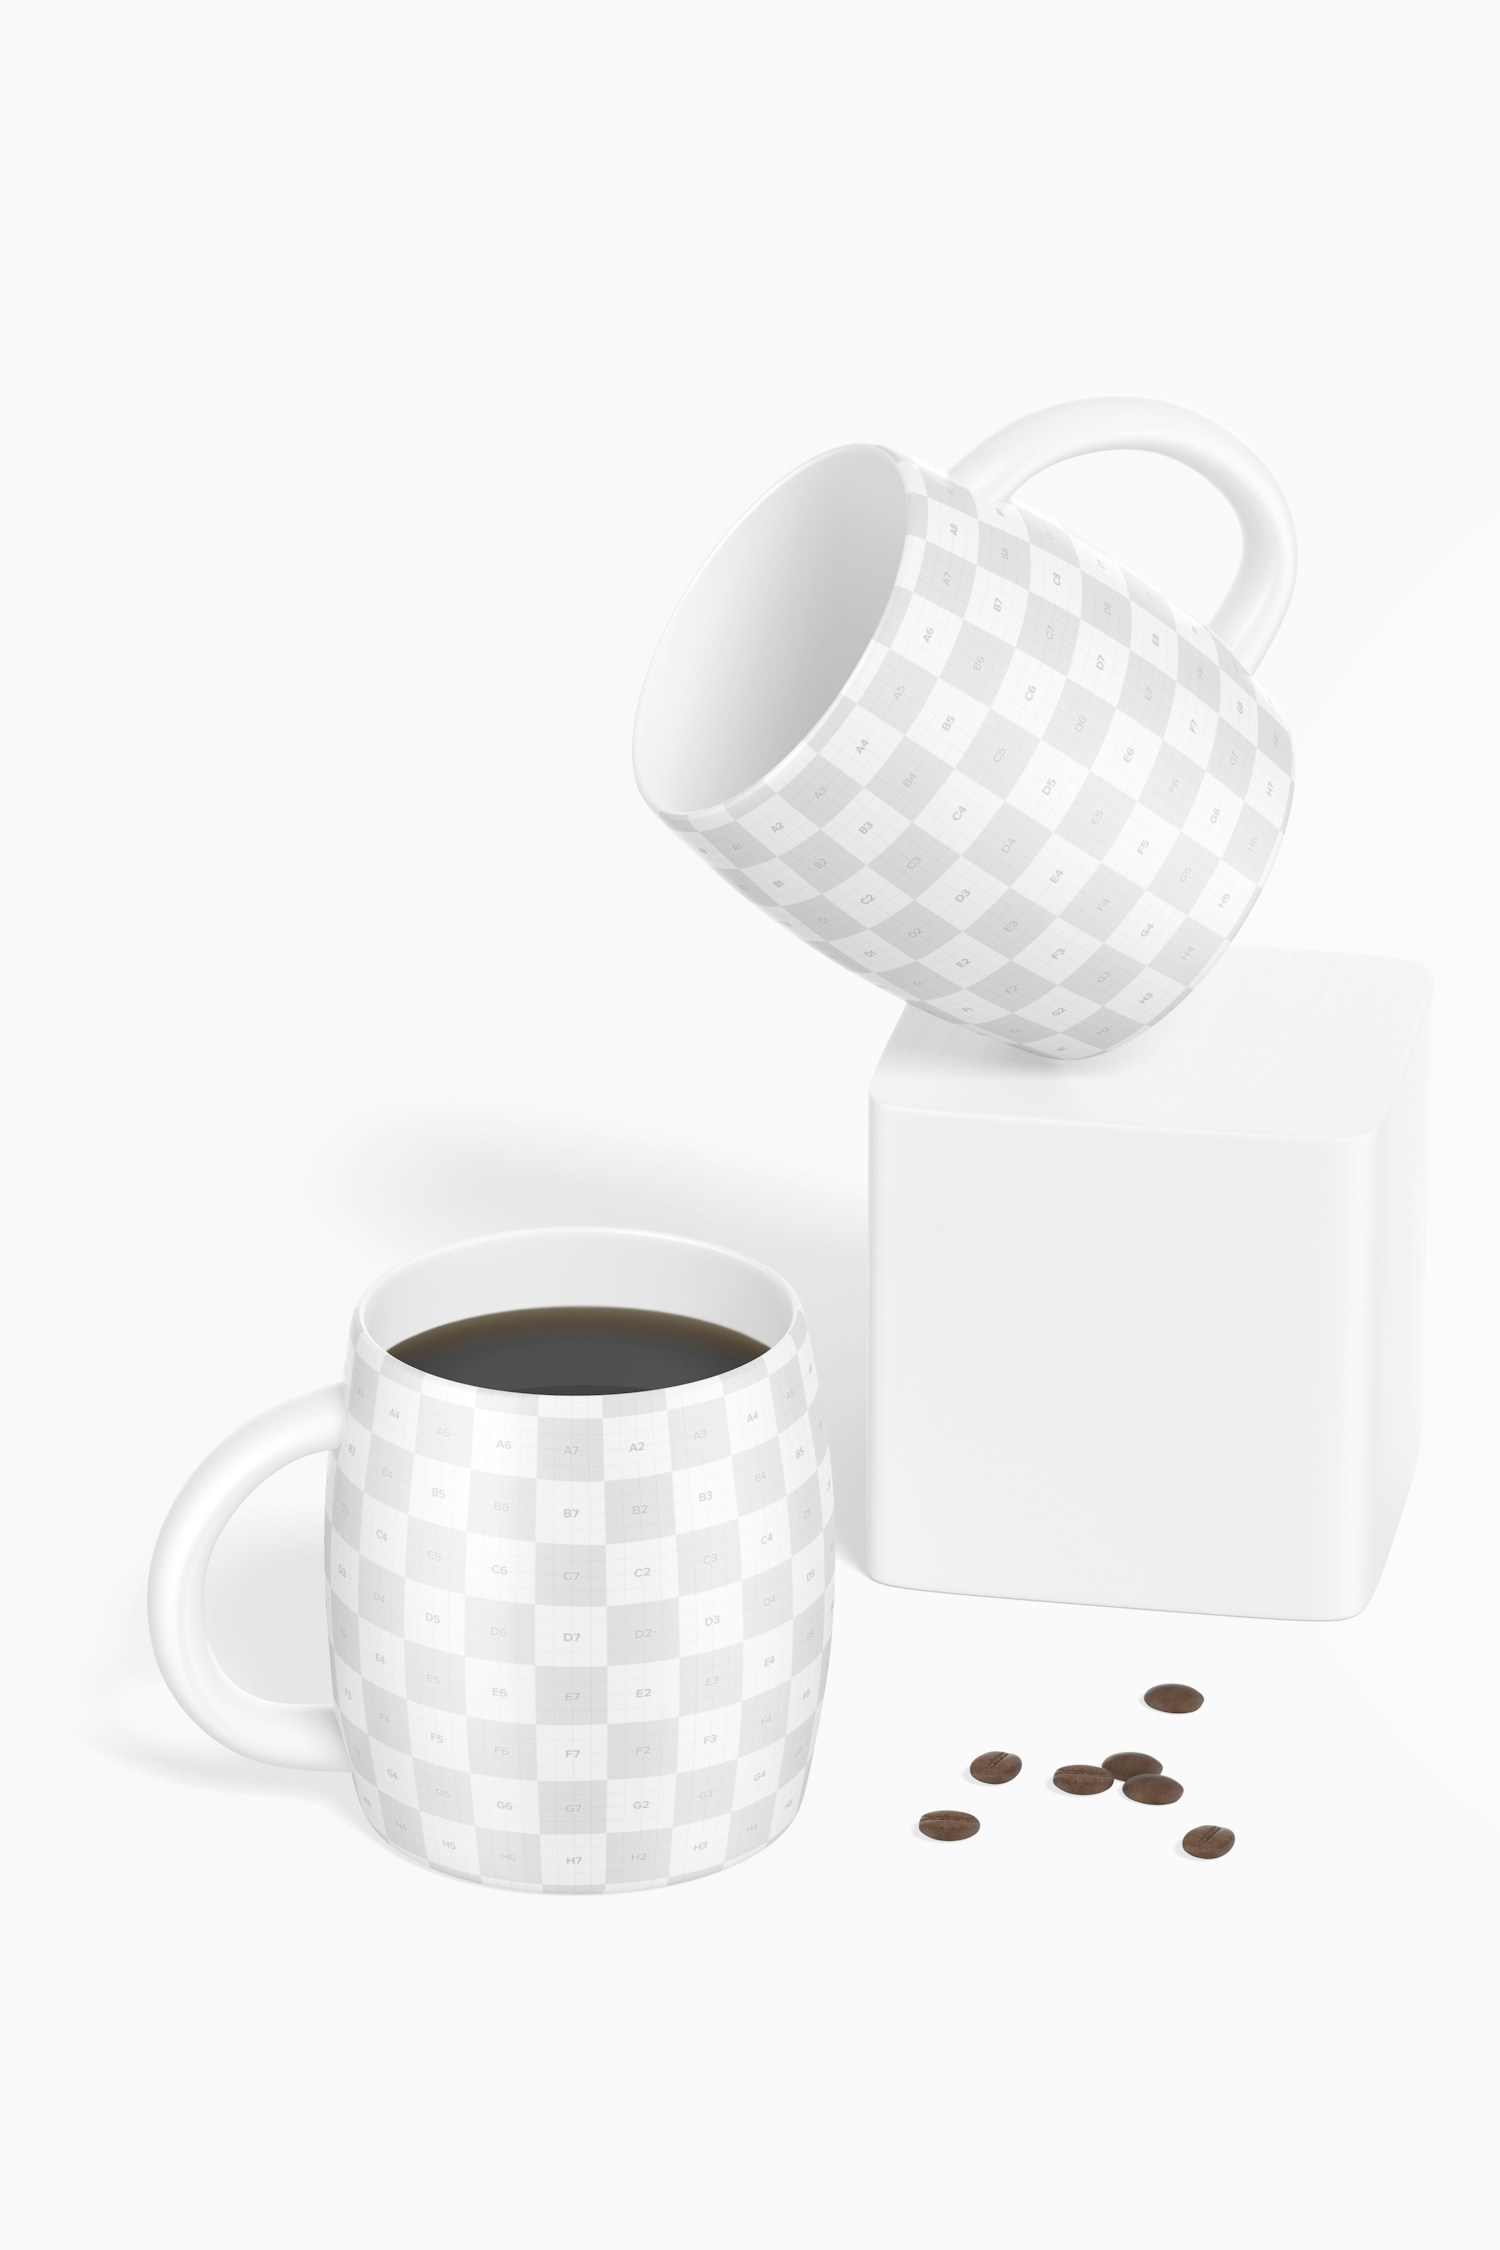 Maqueta Tazas de Ceramica para Café de 14 oz